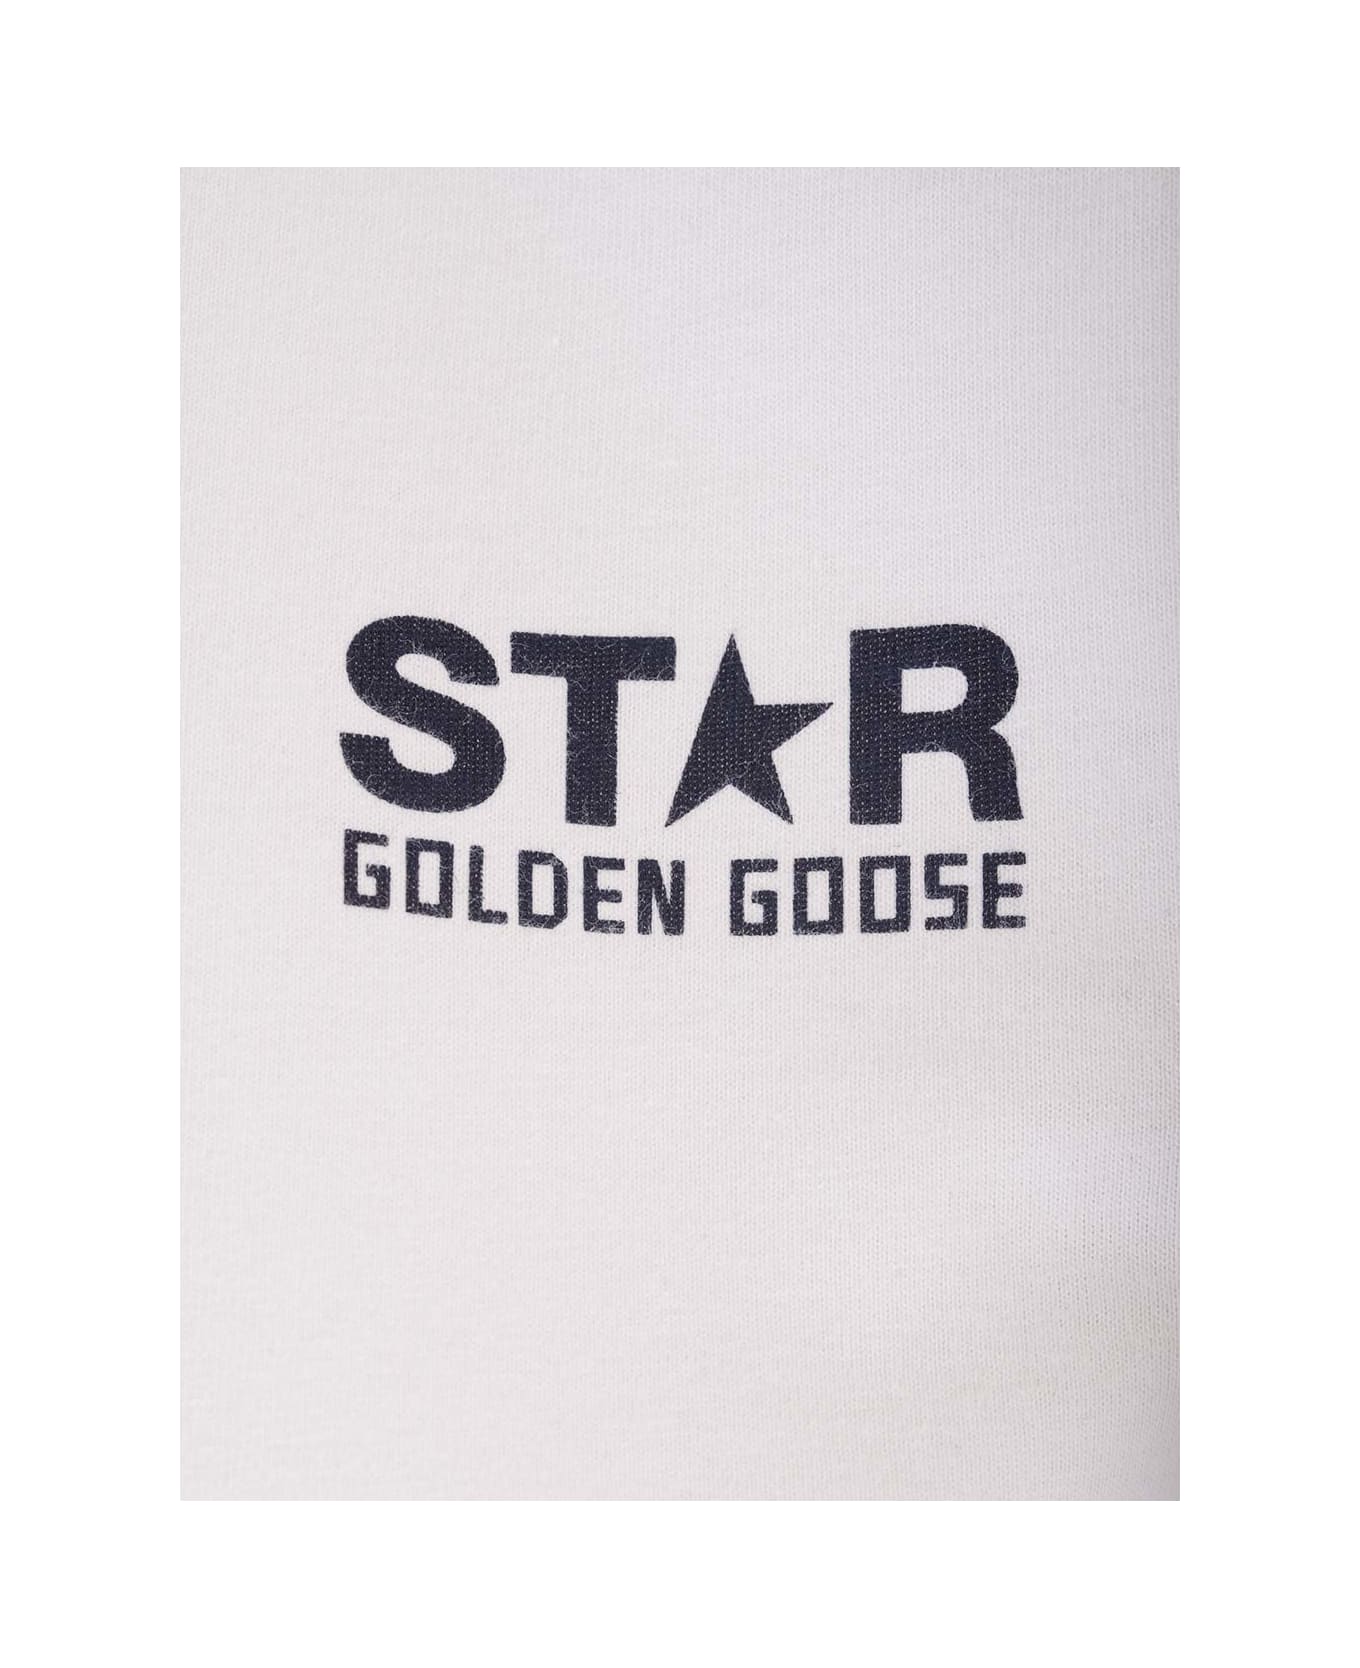 Golden Goose Slim Fit T-shirt - Cream